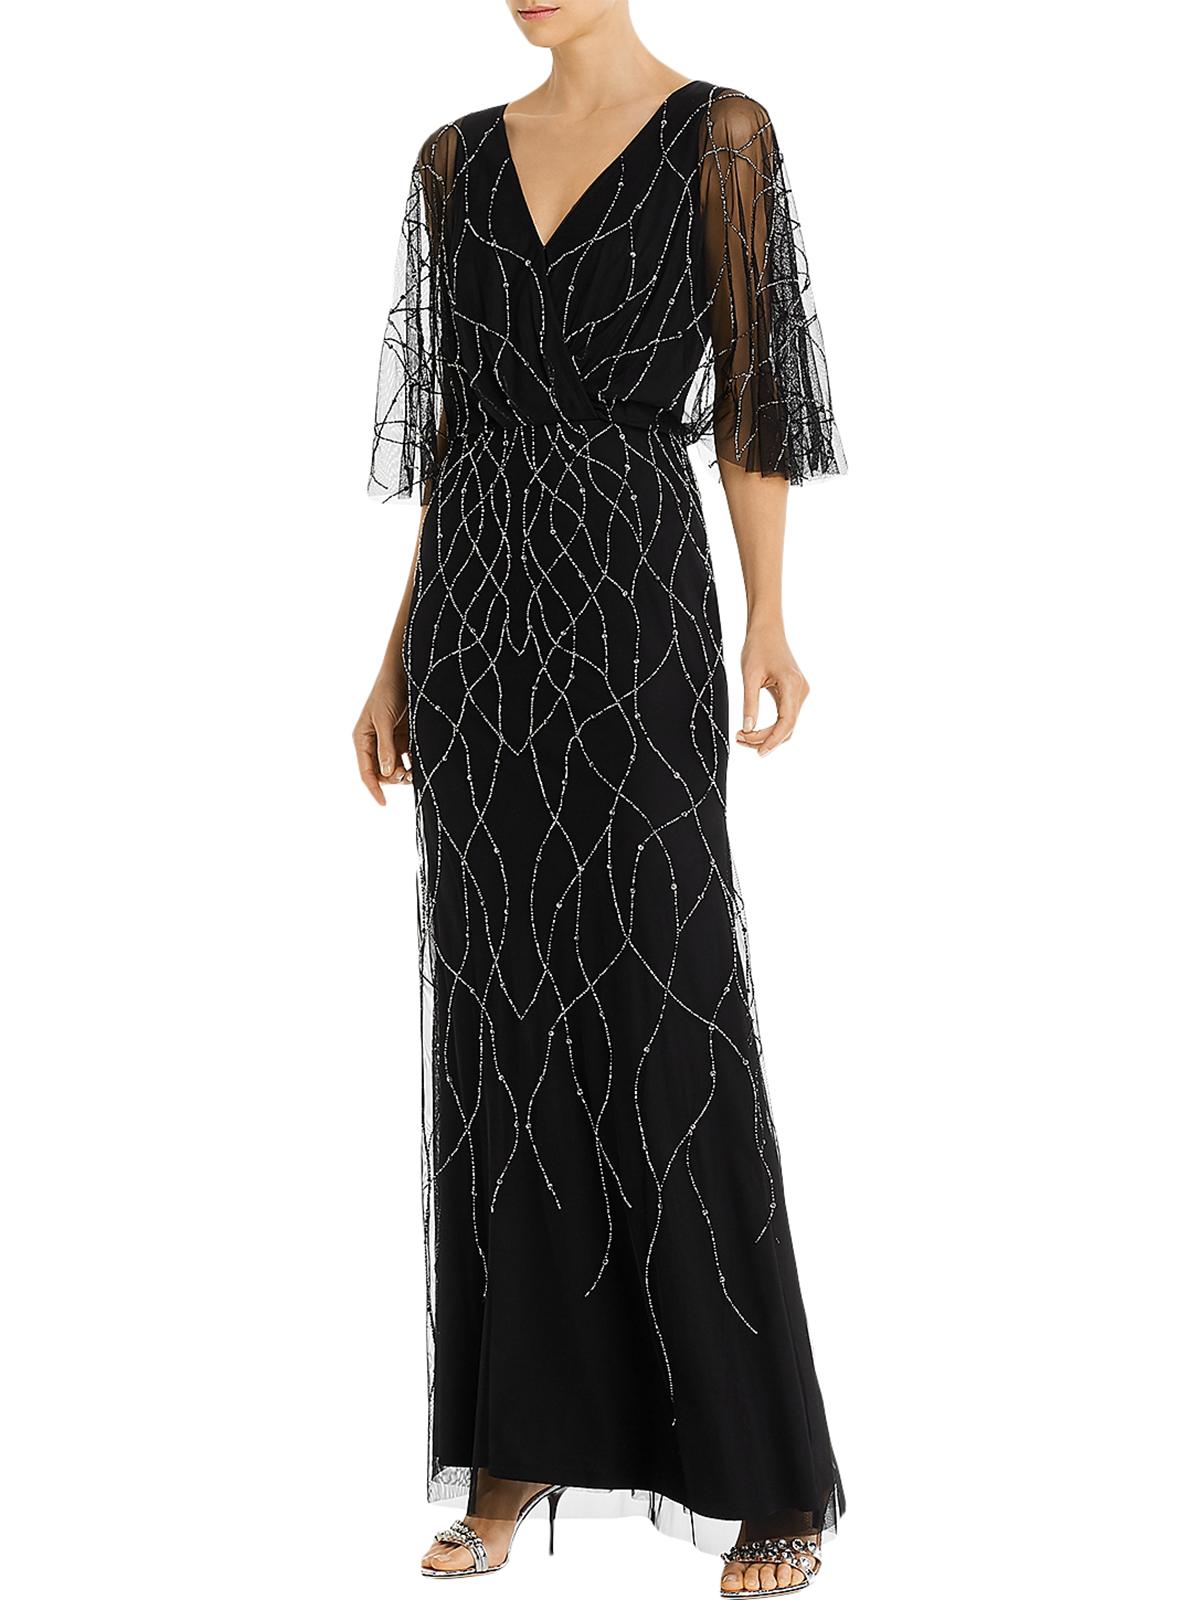 Adrianna Papell Womens Beaded V Neck Formal Dress Black 2 - Walmart.com